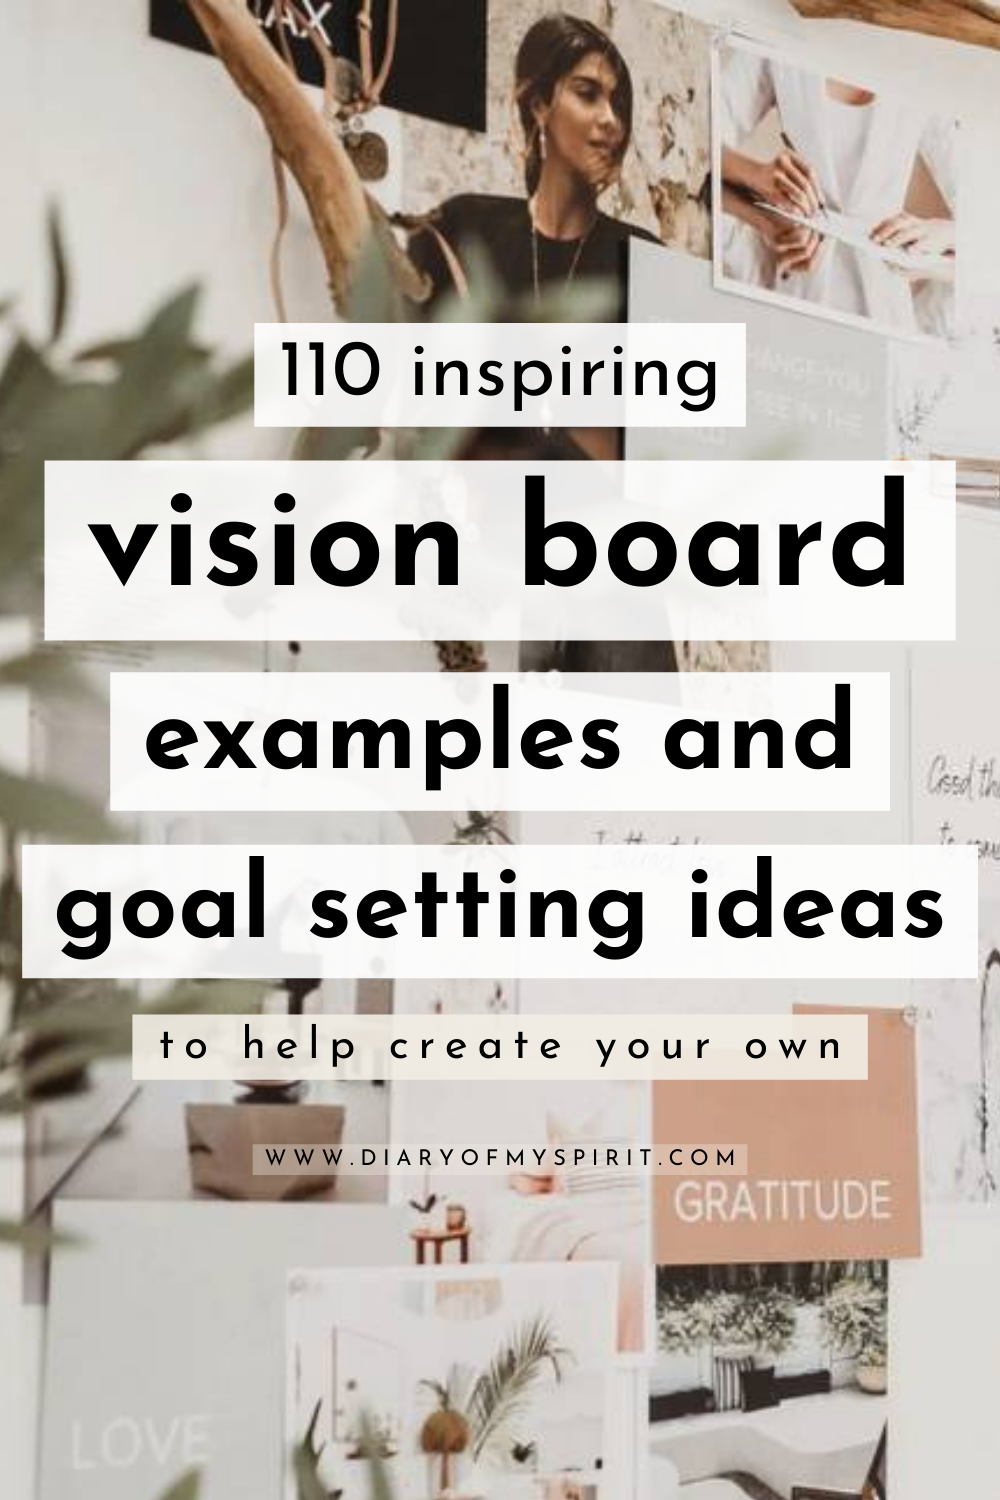 7 2020 vision board idea  vision board, vision board party